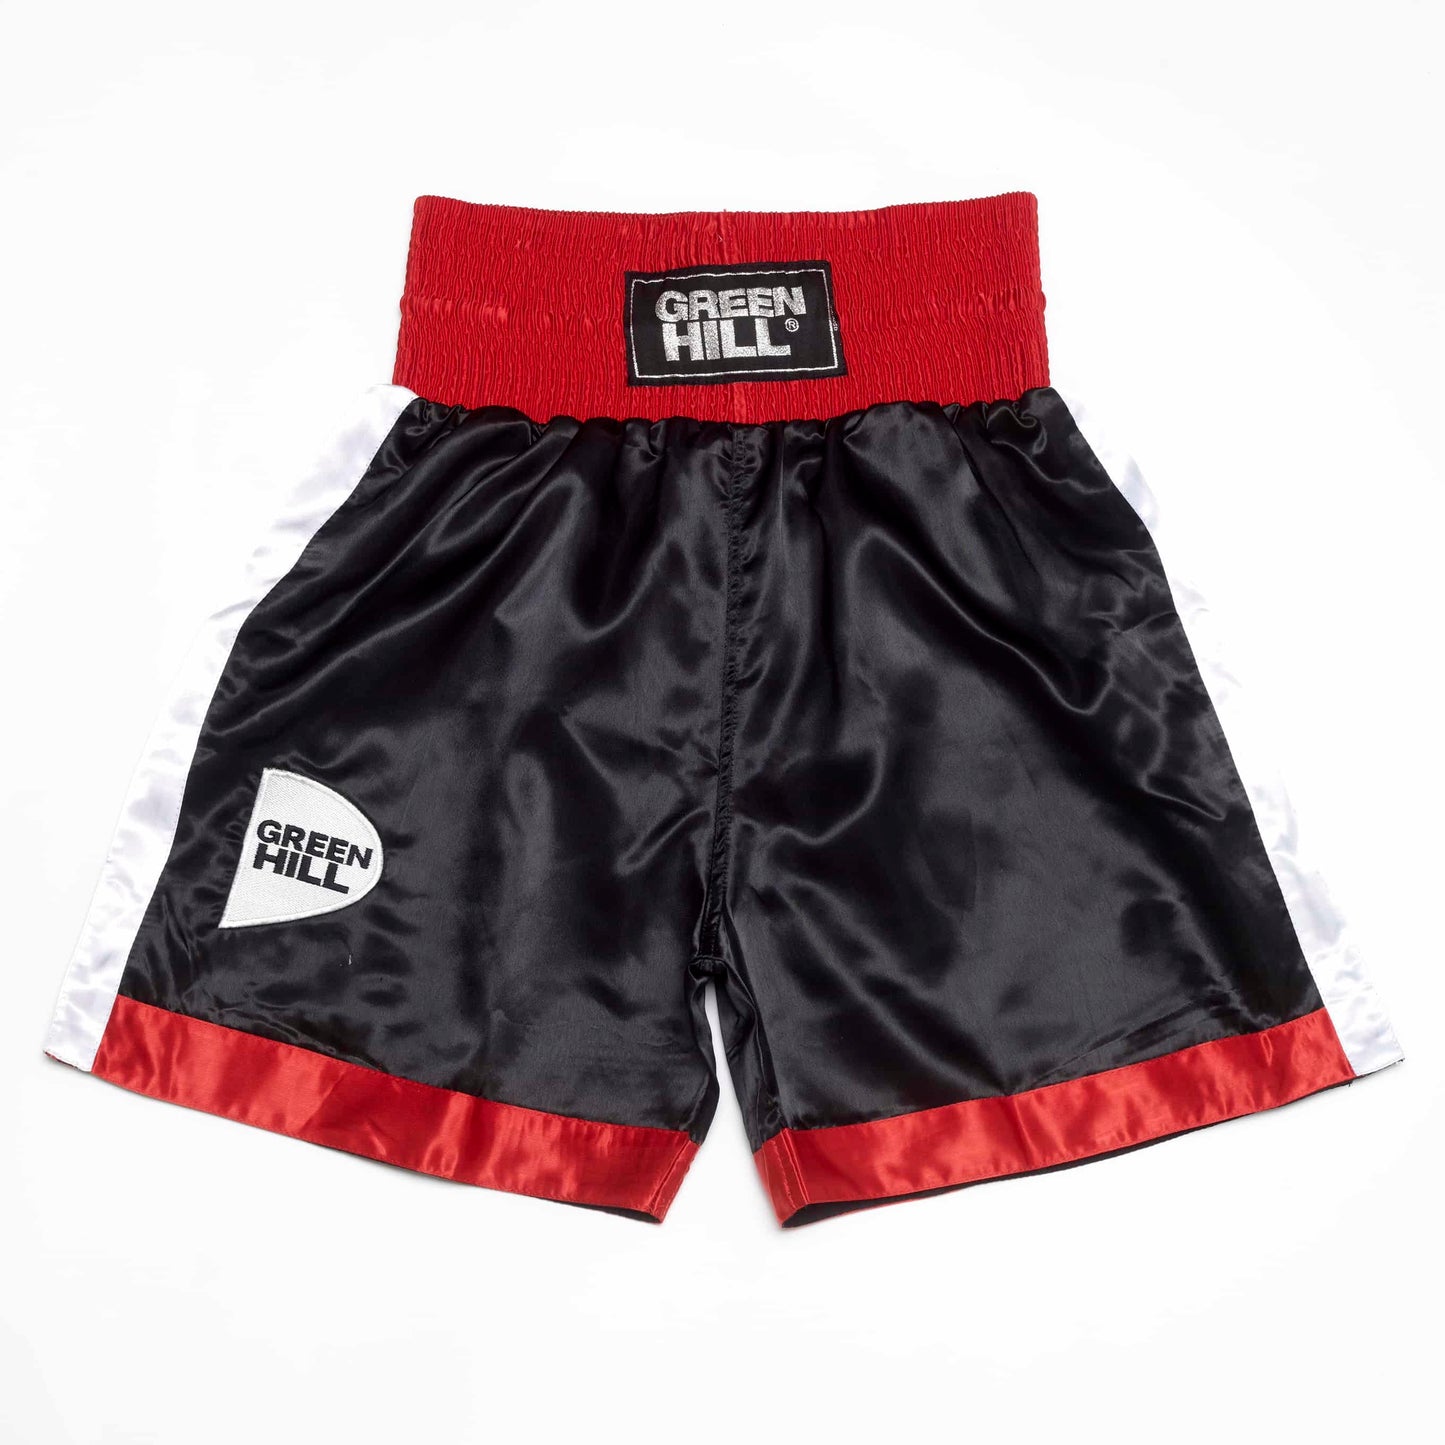 Boxing Shorts “PIPER”